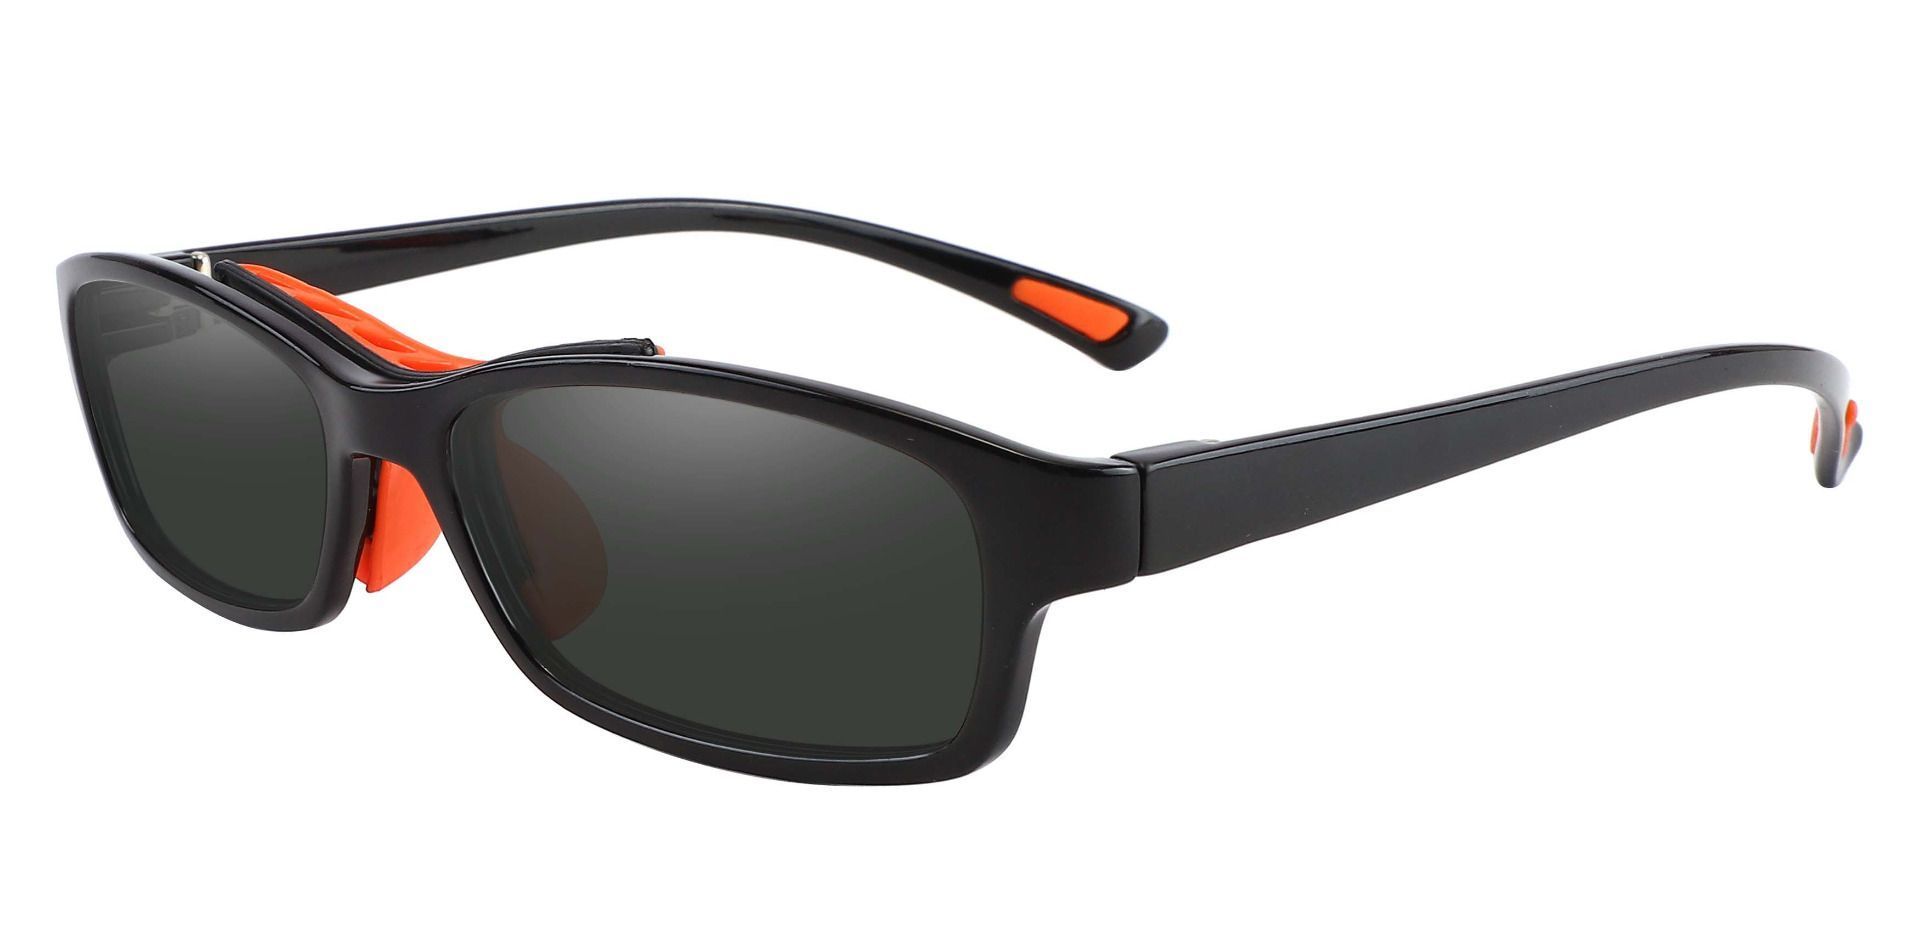 Glynn Rectangle Prescription Sunglasses - Black Frame With Gray Lenses